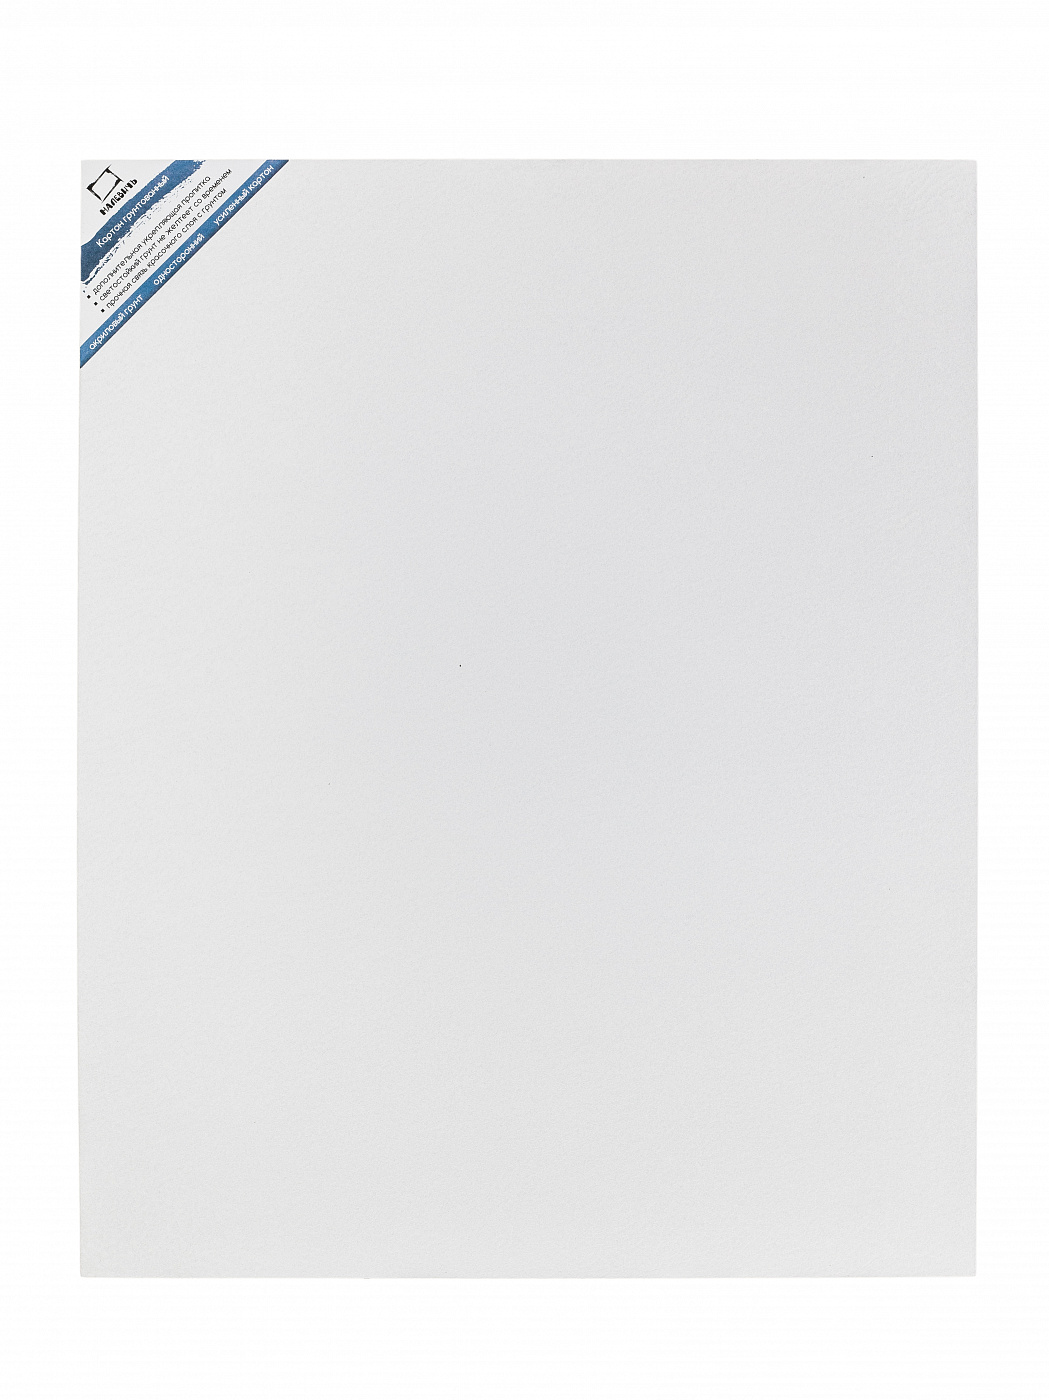 Картон грунтованный односторонний Малевичъ 40х50 см картон грунтованный односторонний малевичъ разные размеры